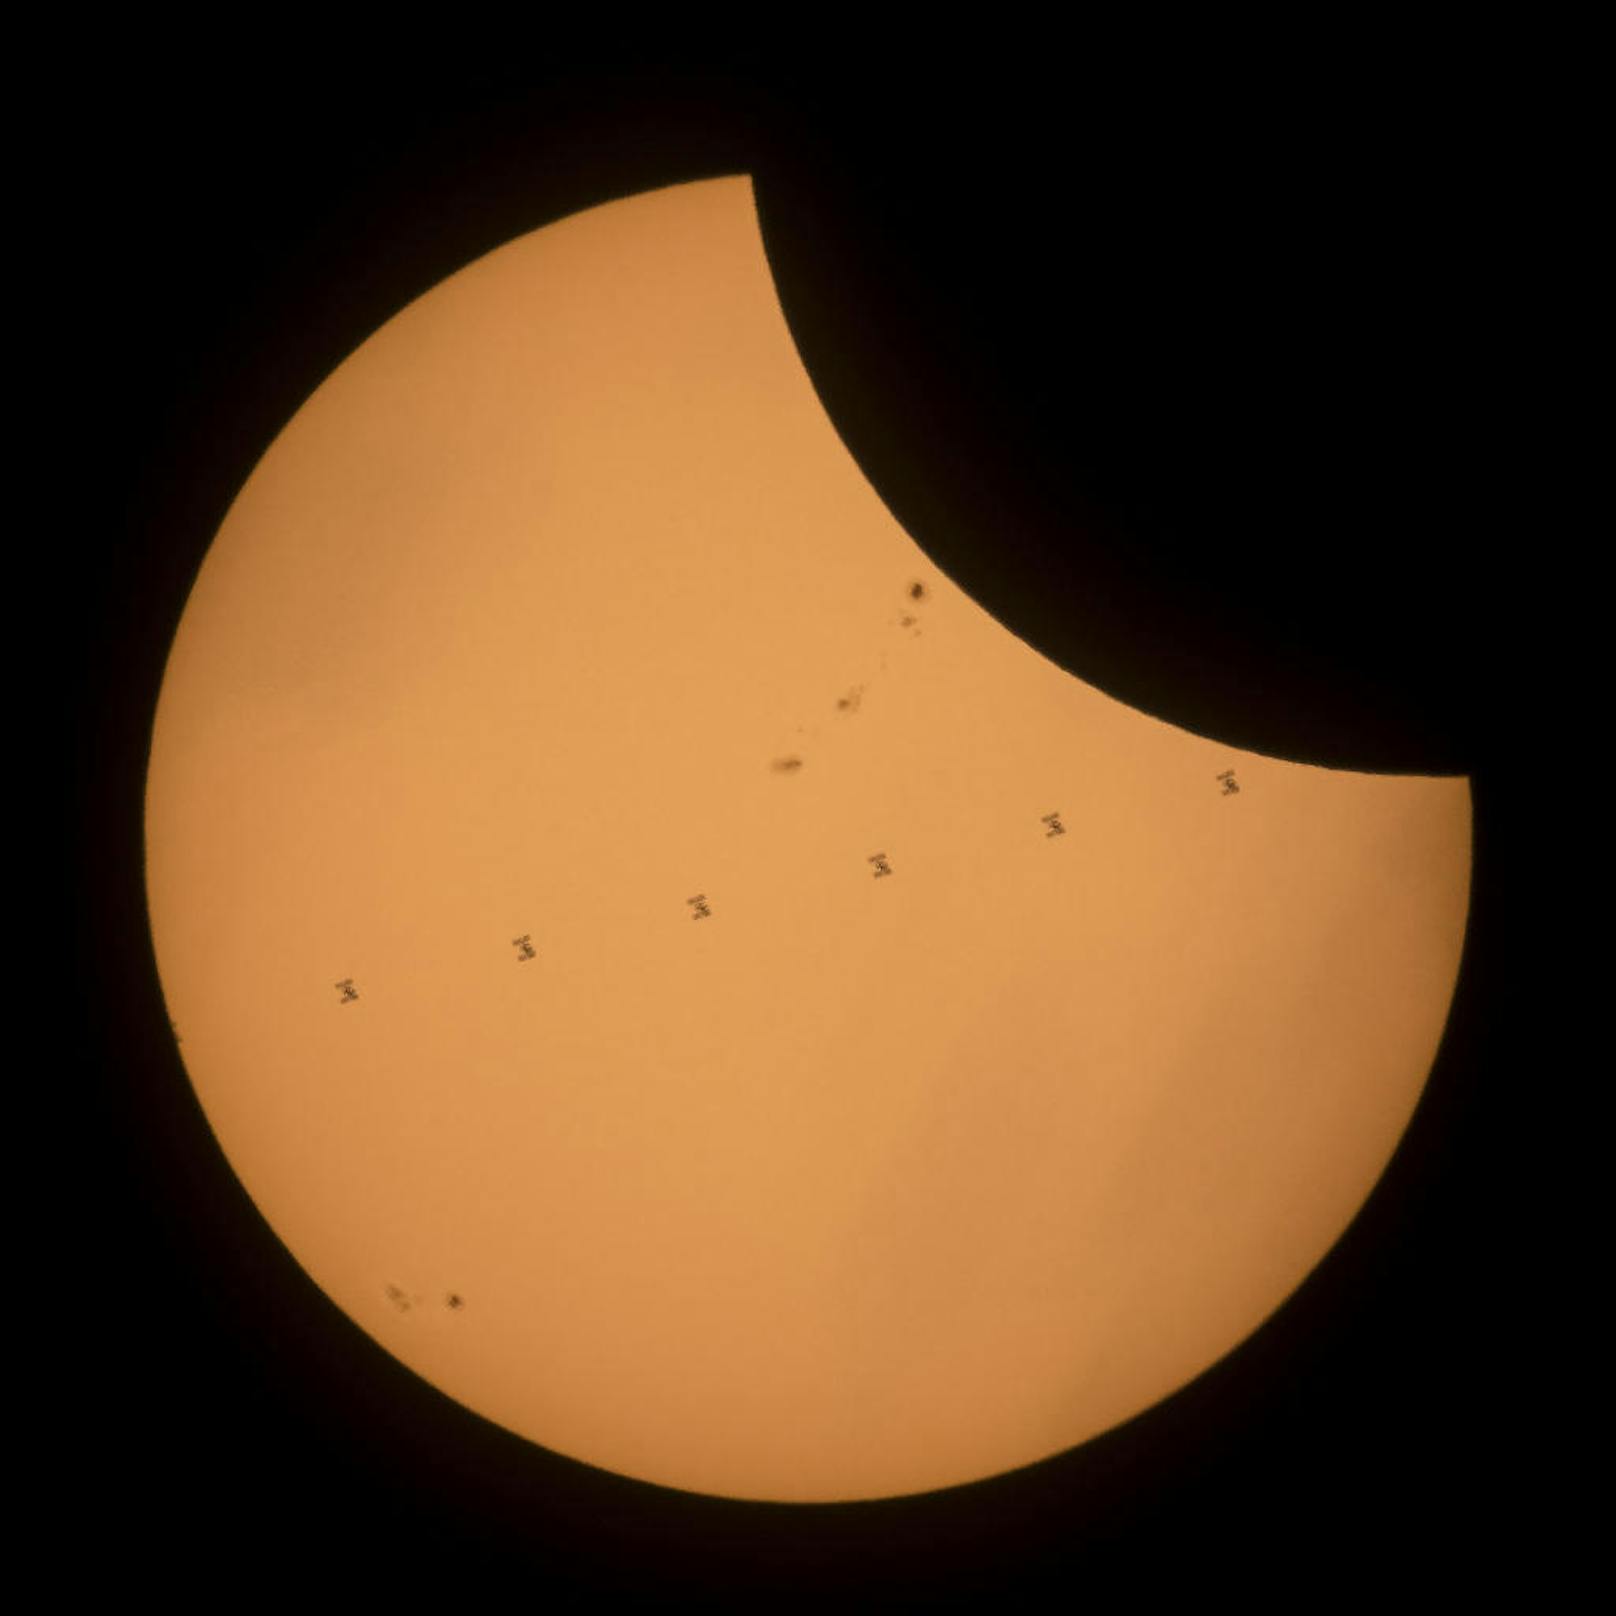 Vom Boden aus konnte die Raumstation ISS während der totalen Sonnenfinsternis bei ihrer Bahnquerung gefilmt werden. In diesem Bild wurden mehrere Einzelaufnahmen zusammengeschnitten.